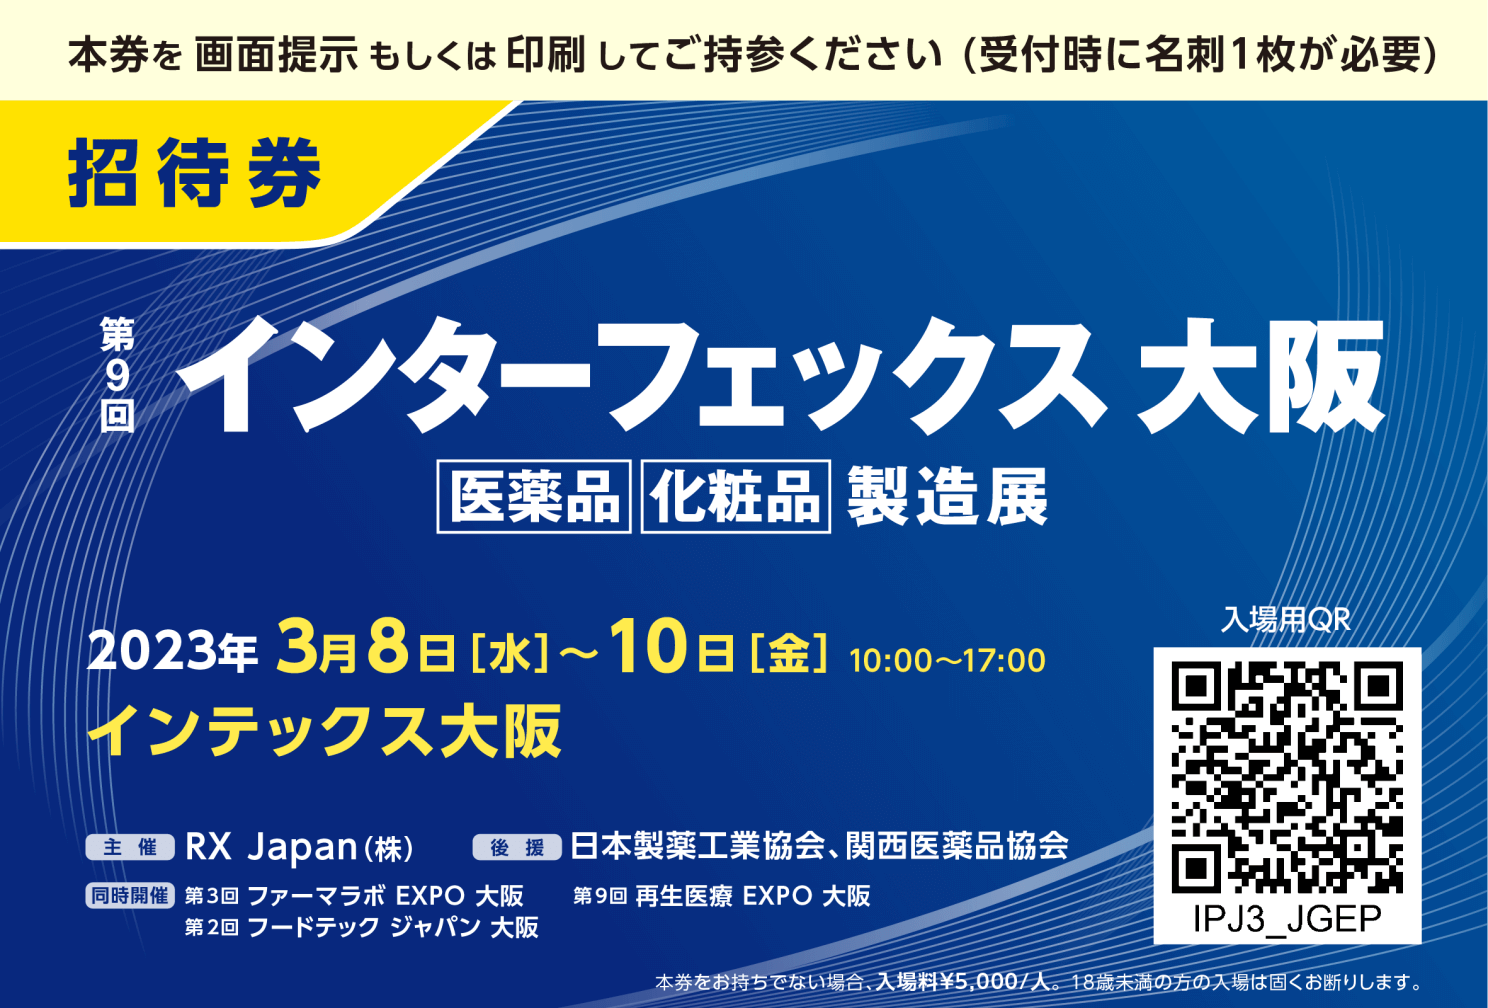 インターフェックス大阪展示会の無料招待券配布